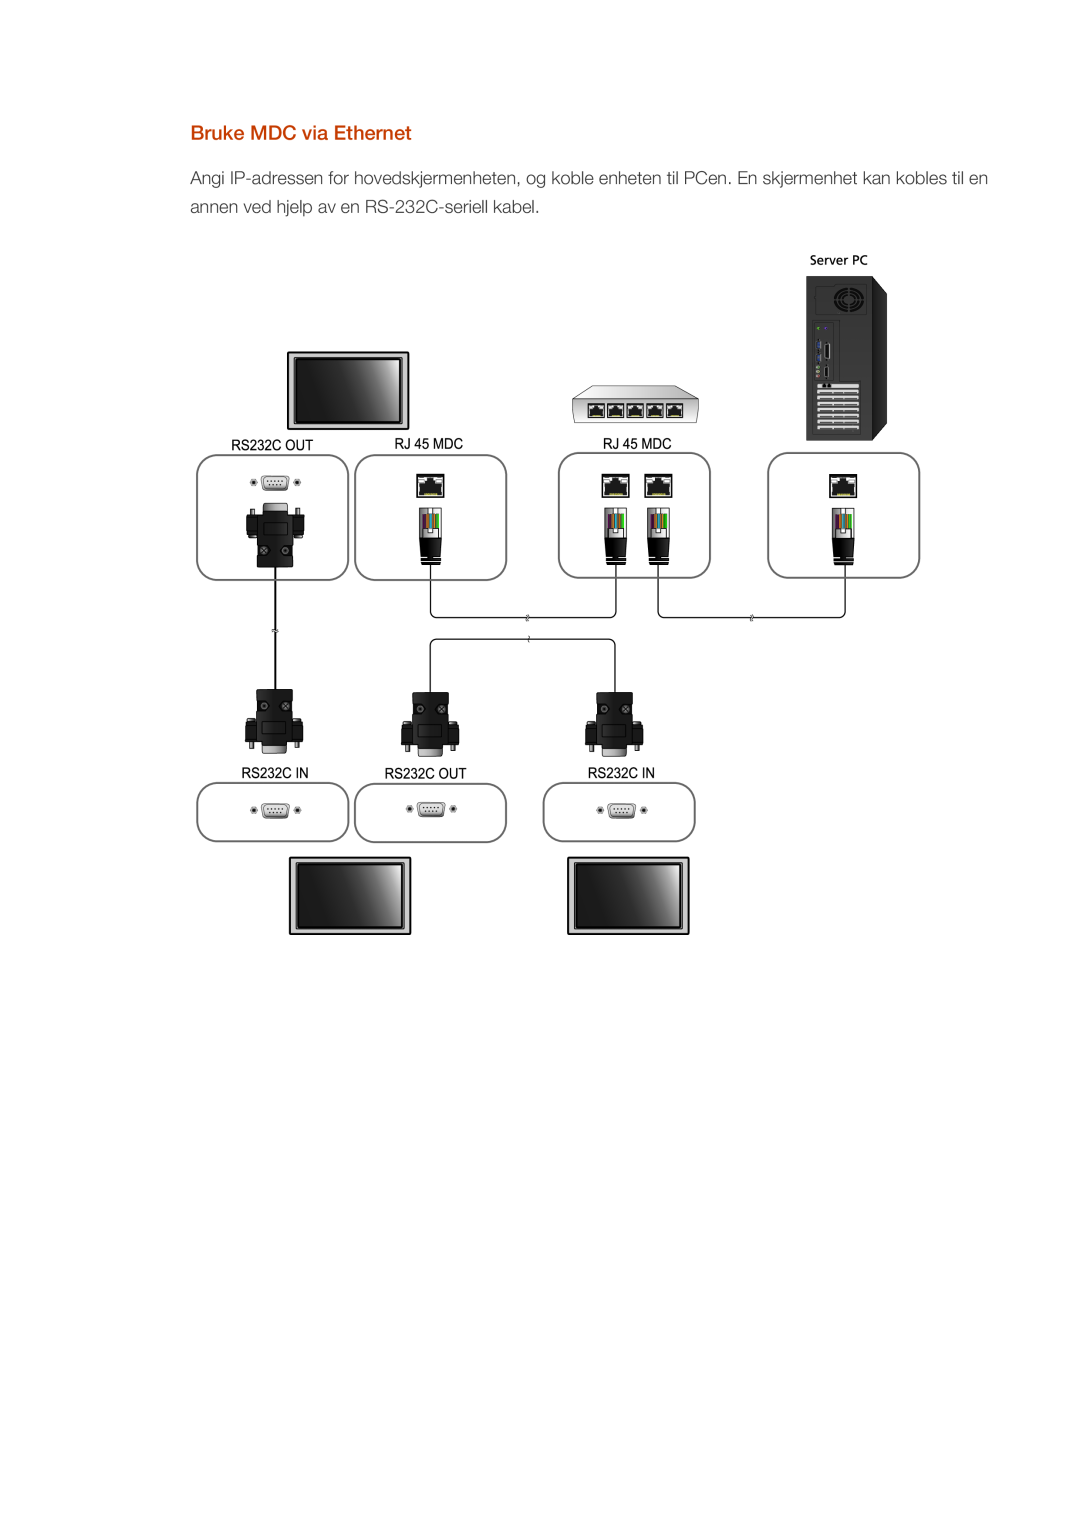 Samsung LH46CRPMBC/EN, LH46CRPMBD/EN, LH40CRPMBD/EN Bruke MDC via Ethernet, annen ved hjelp av en RS-232C-seriell kabel 